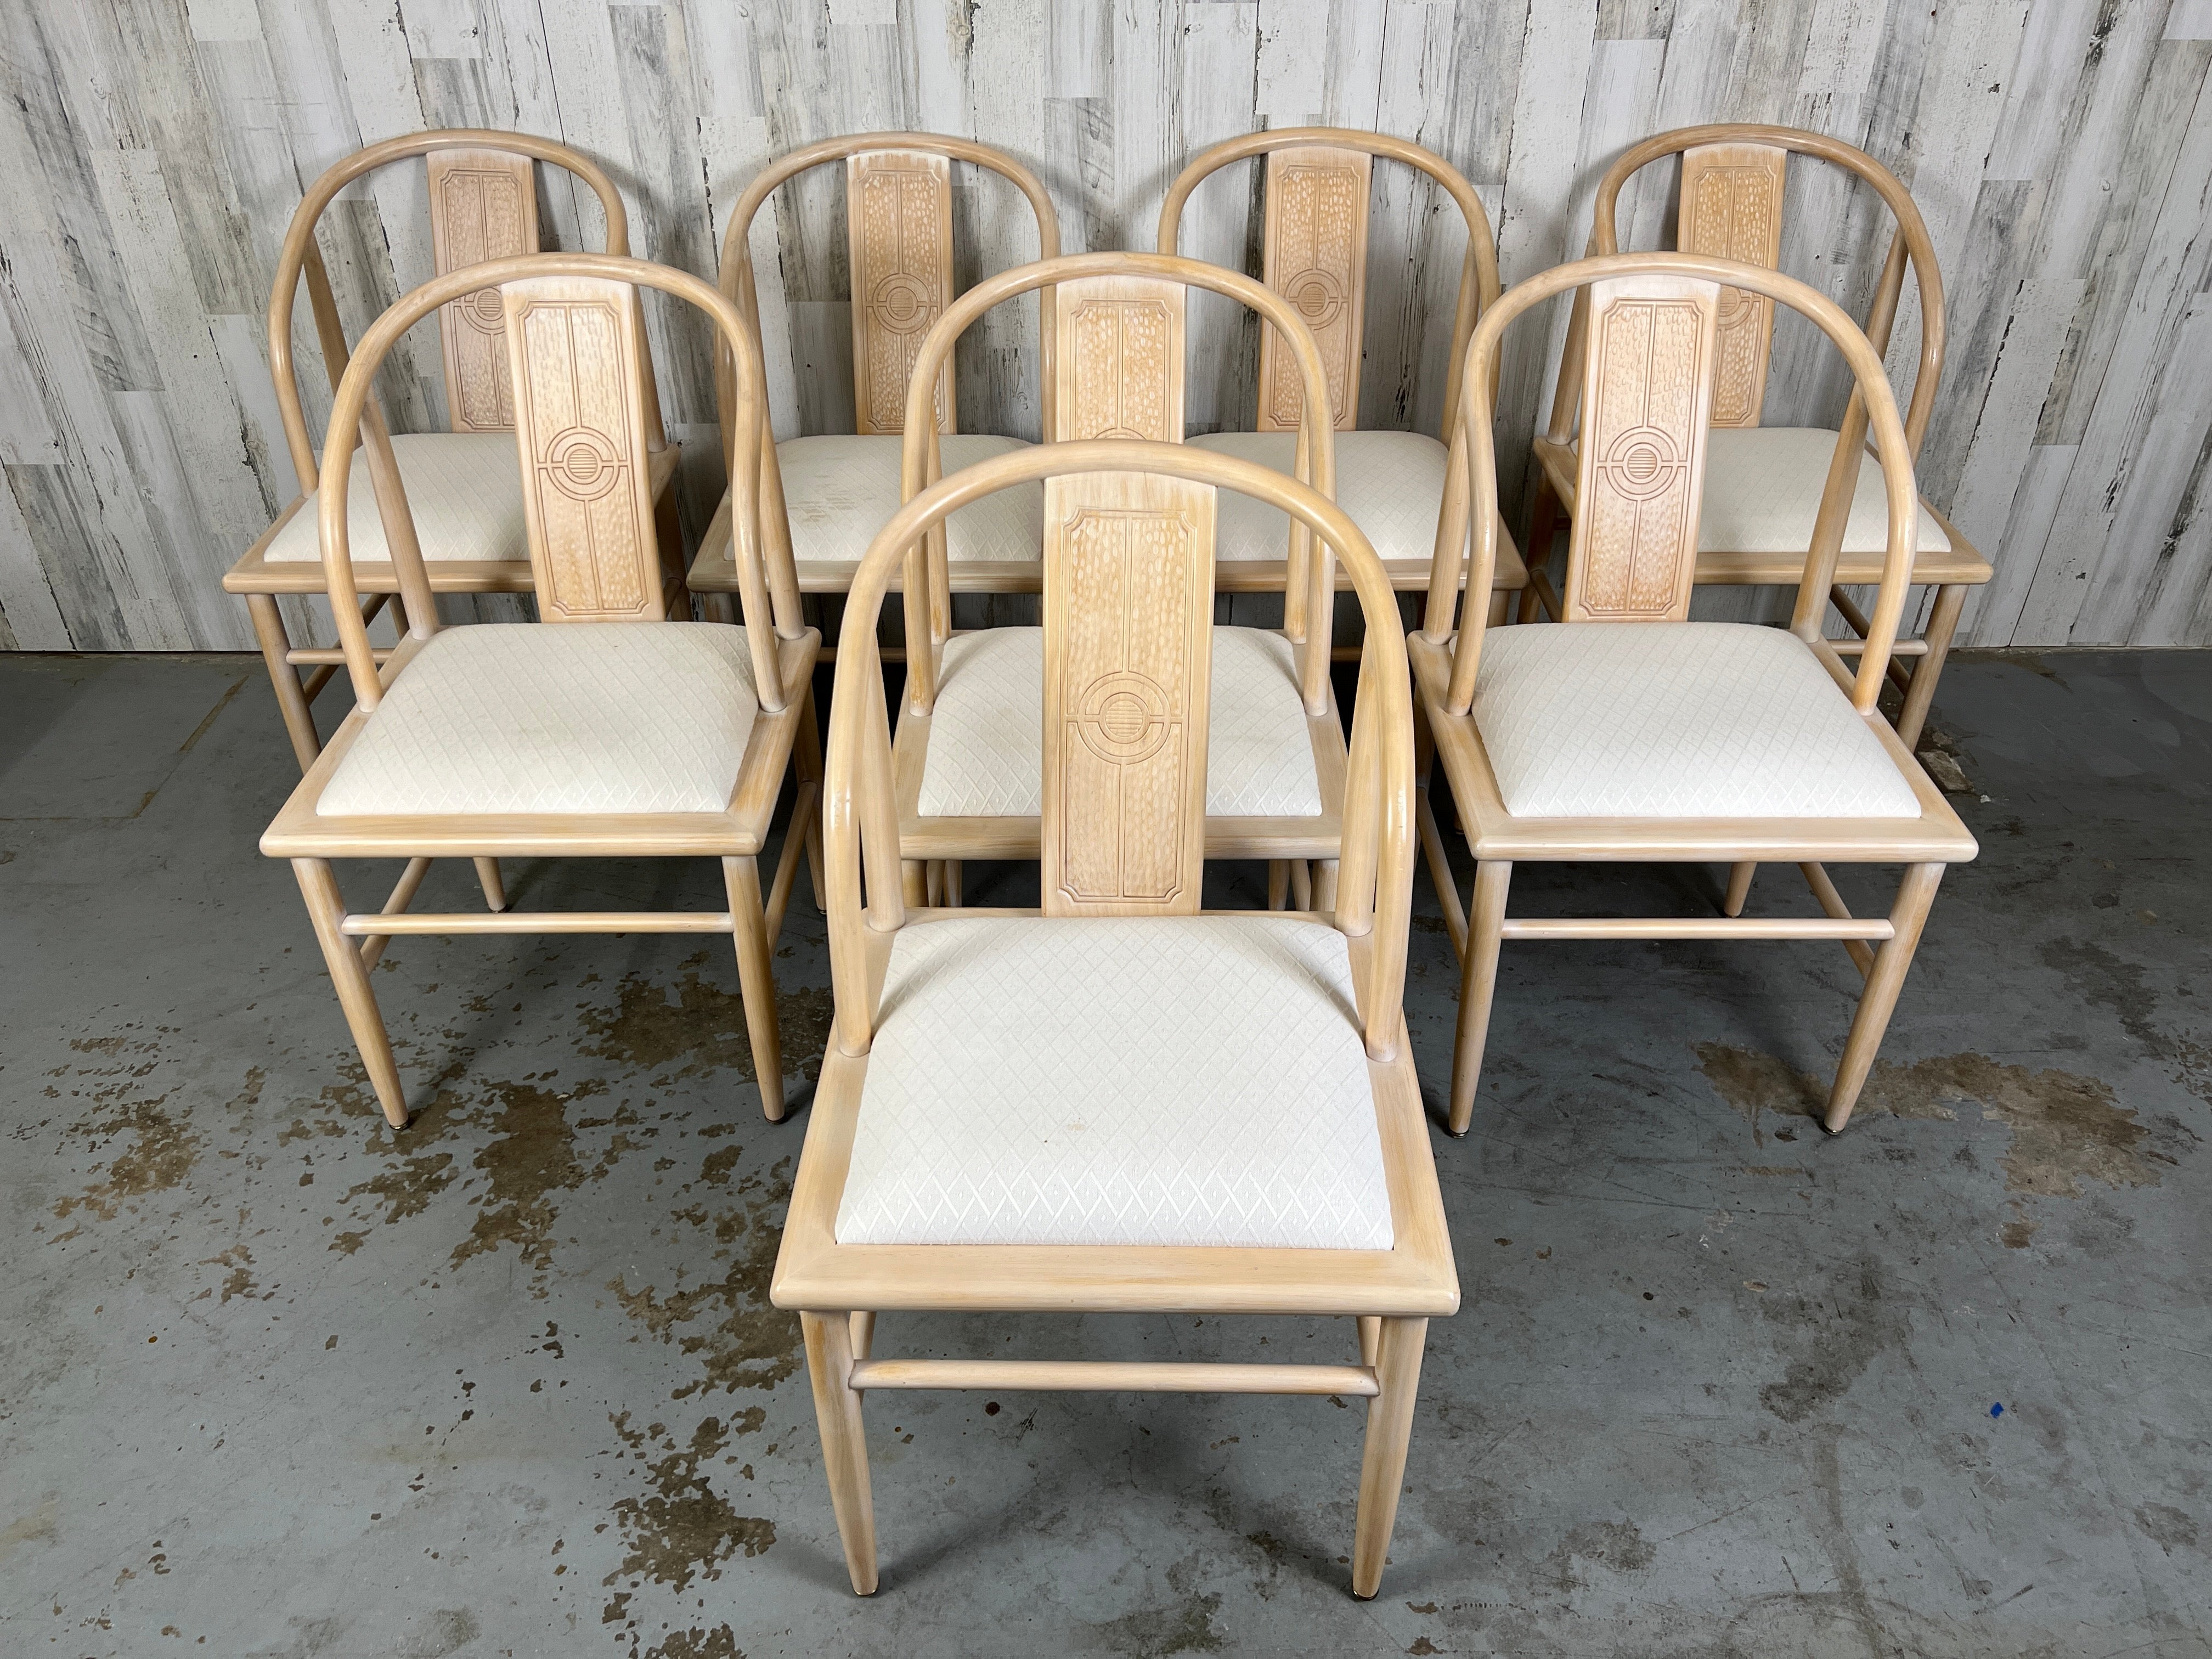 Asiatische, moderne Esszimmerstühle im Hufeisenstil mit mandelfarbener Oberfläche.
Sehr bequem und robust. Neue Polsterung ist erforderlich, siehe Bilder.
 